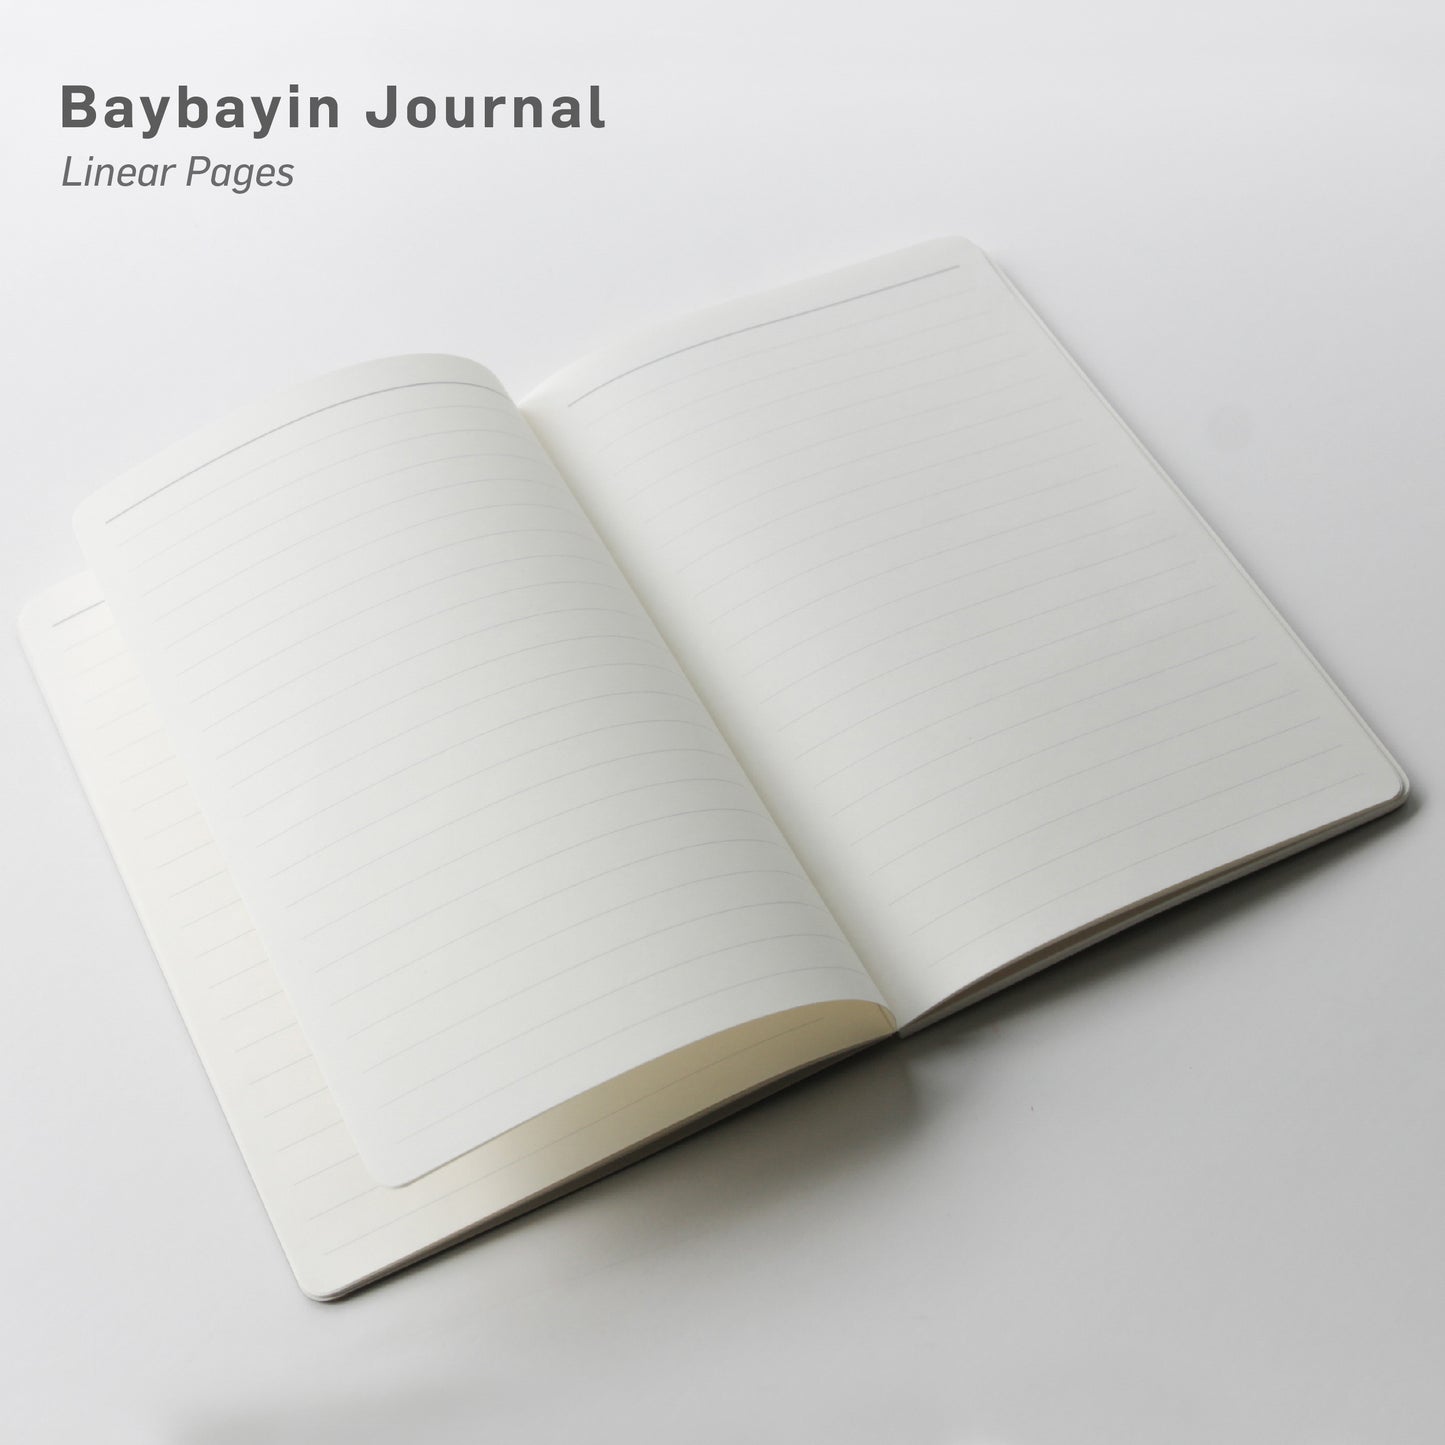 Baybayin Journal - Khaki